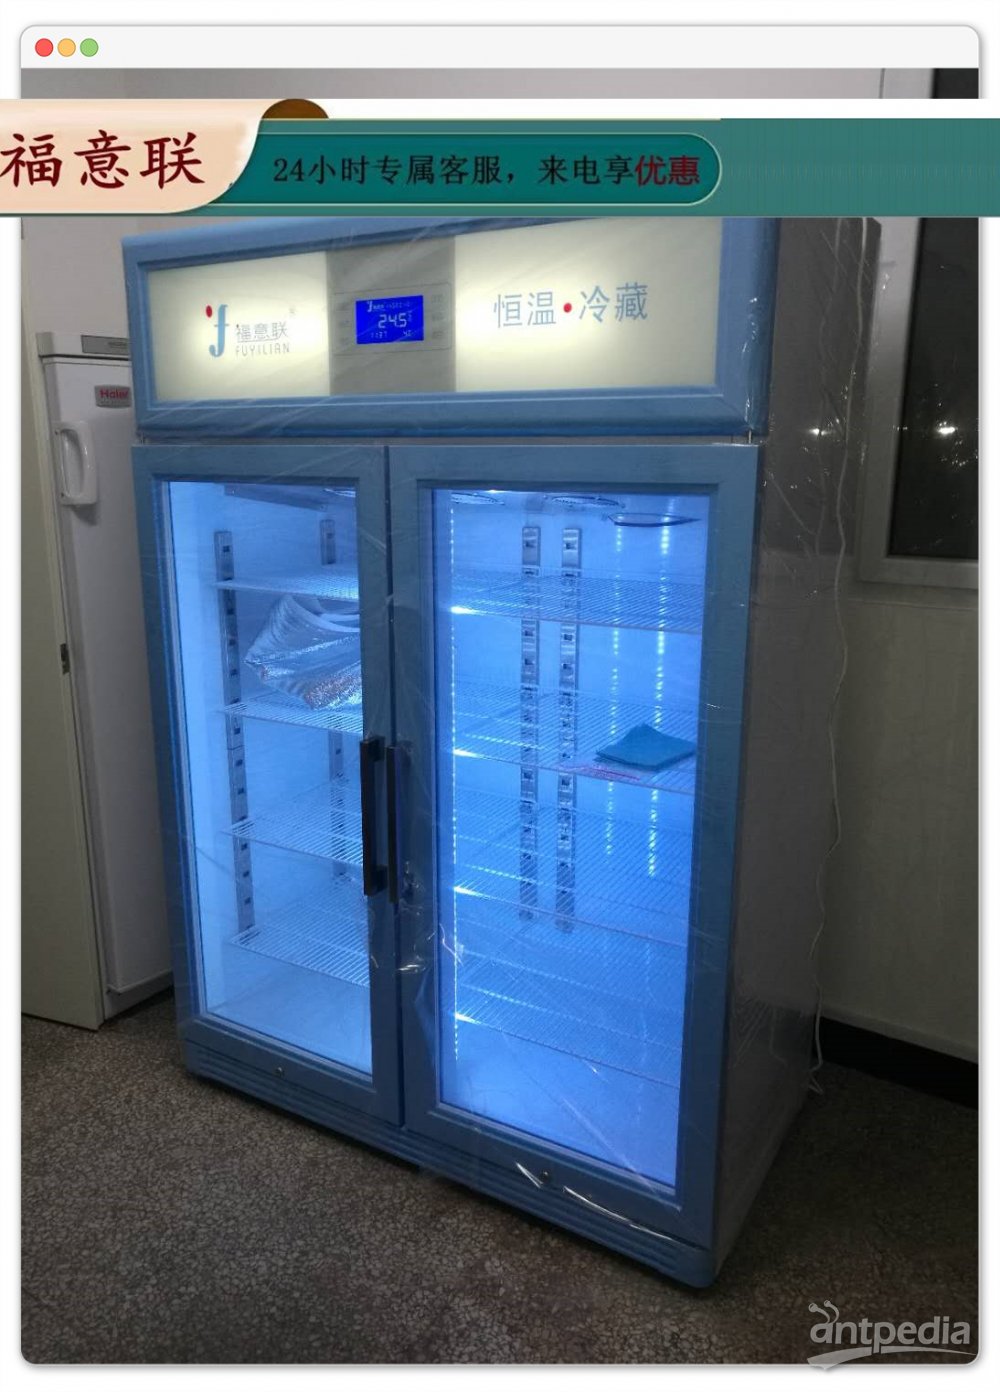 药品冰箱提升医疗公共卫生基础能力建设FYL-YS-828LD